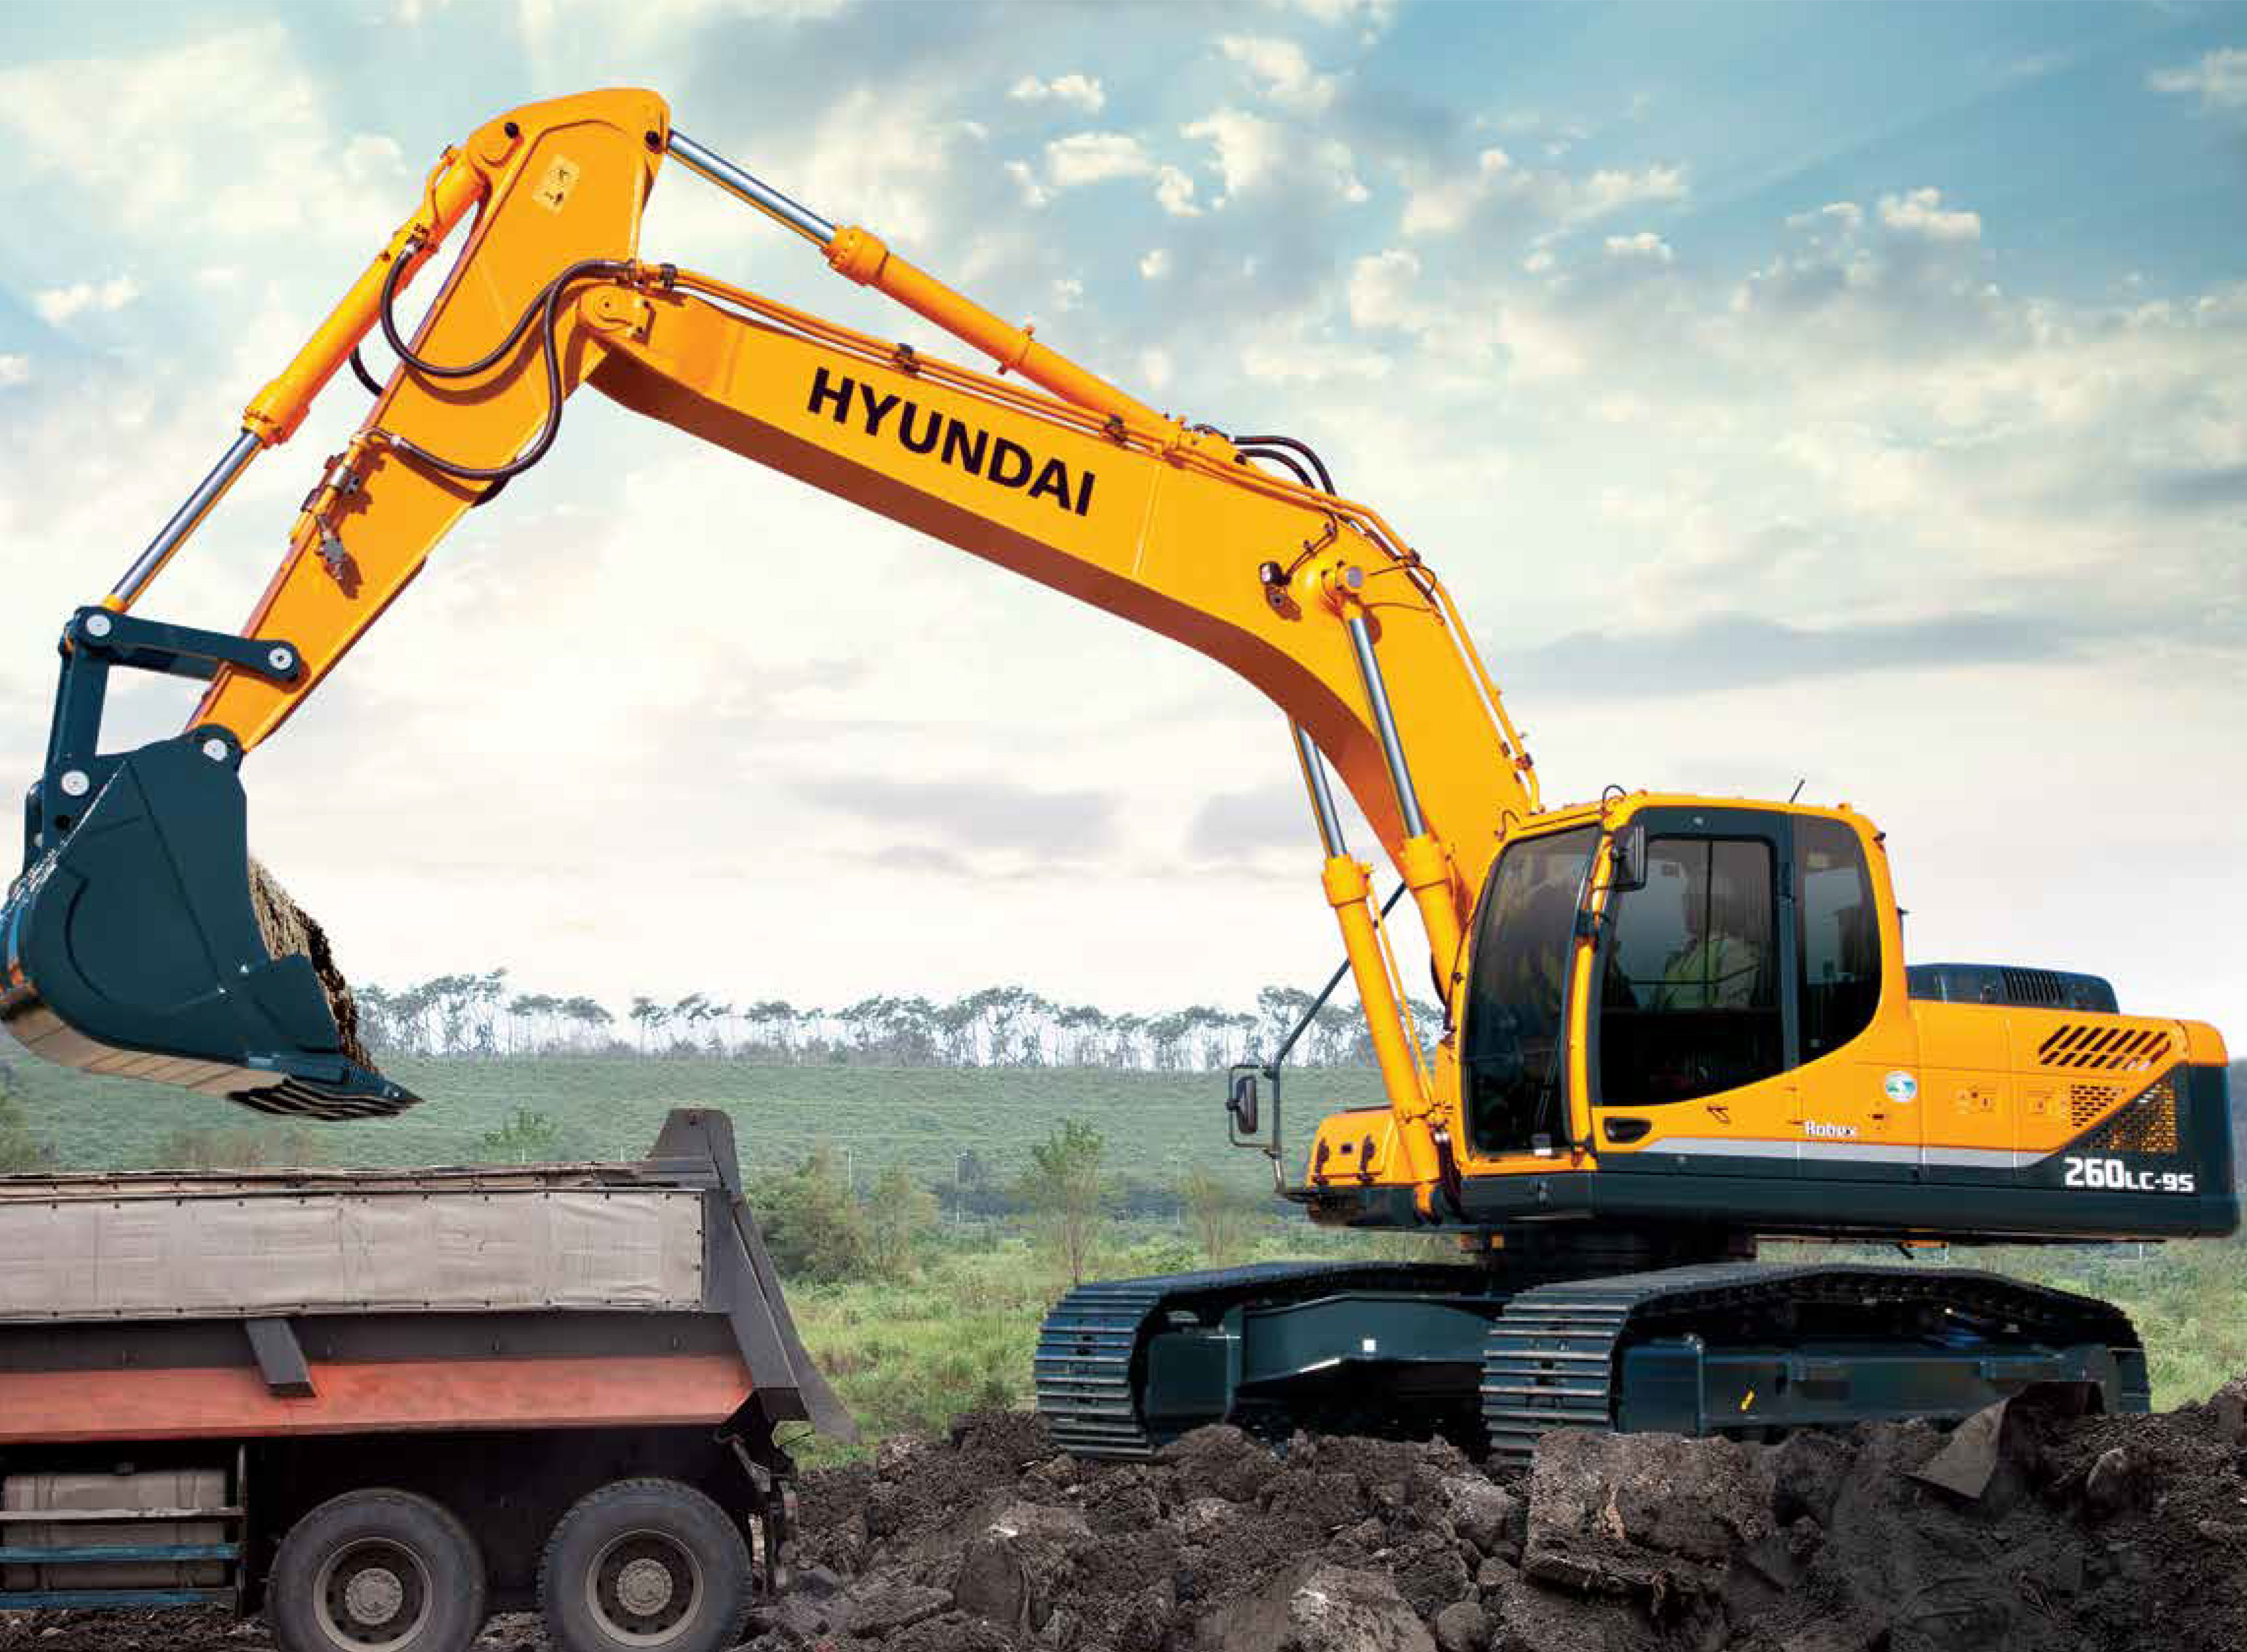 HPE introduces new hyundai-r260lc-9s-crawler-excavators